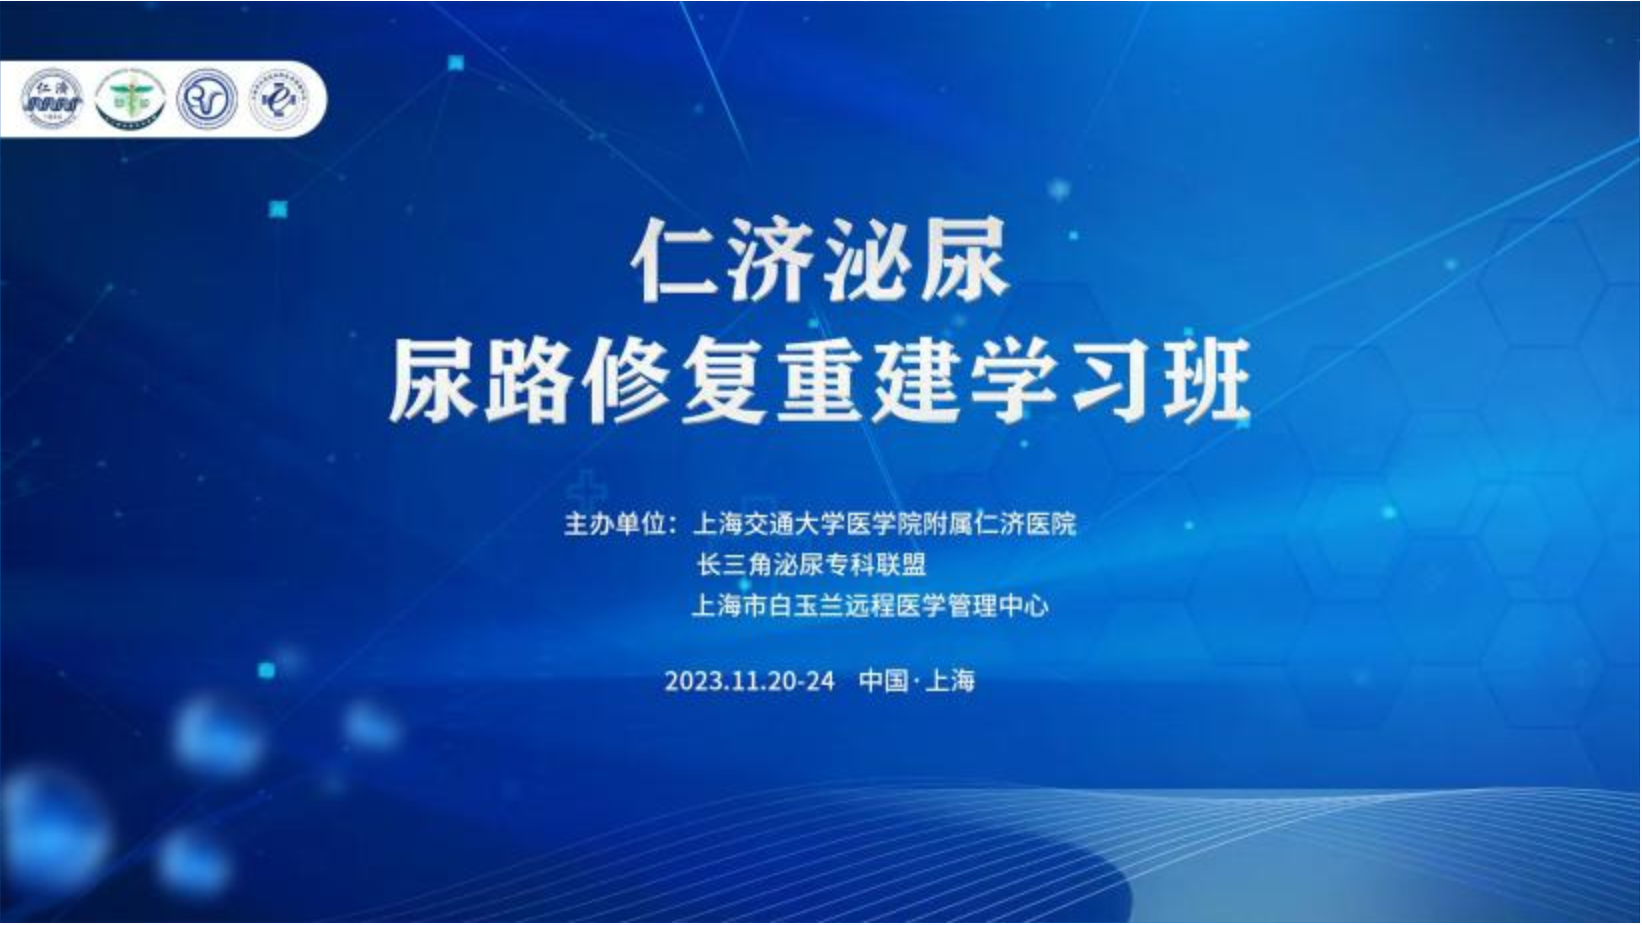 上海交通大学医学院附属仁济医院成功举办2023年度尿路修复重建培训班